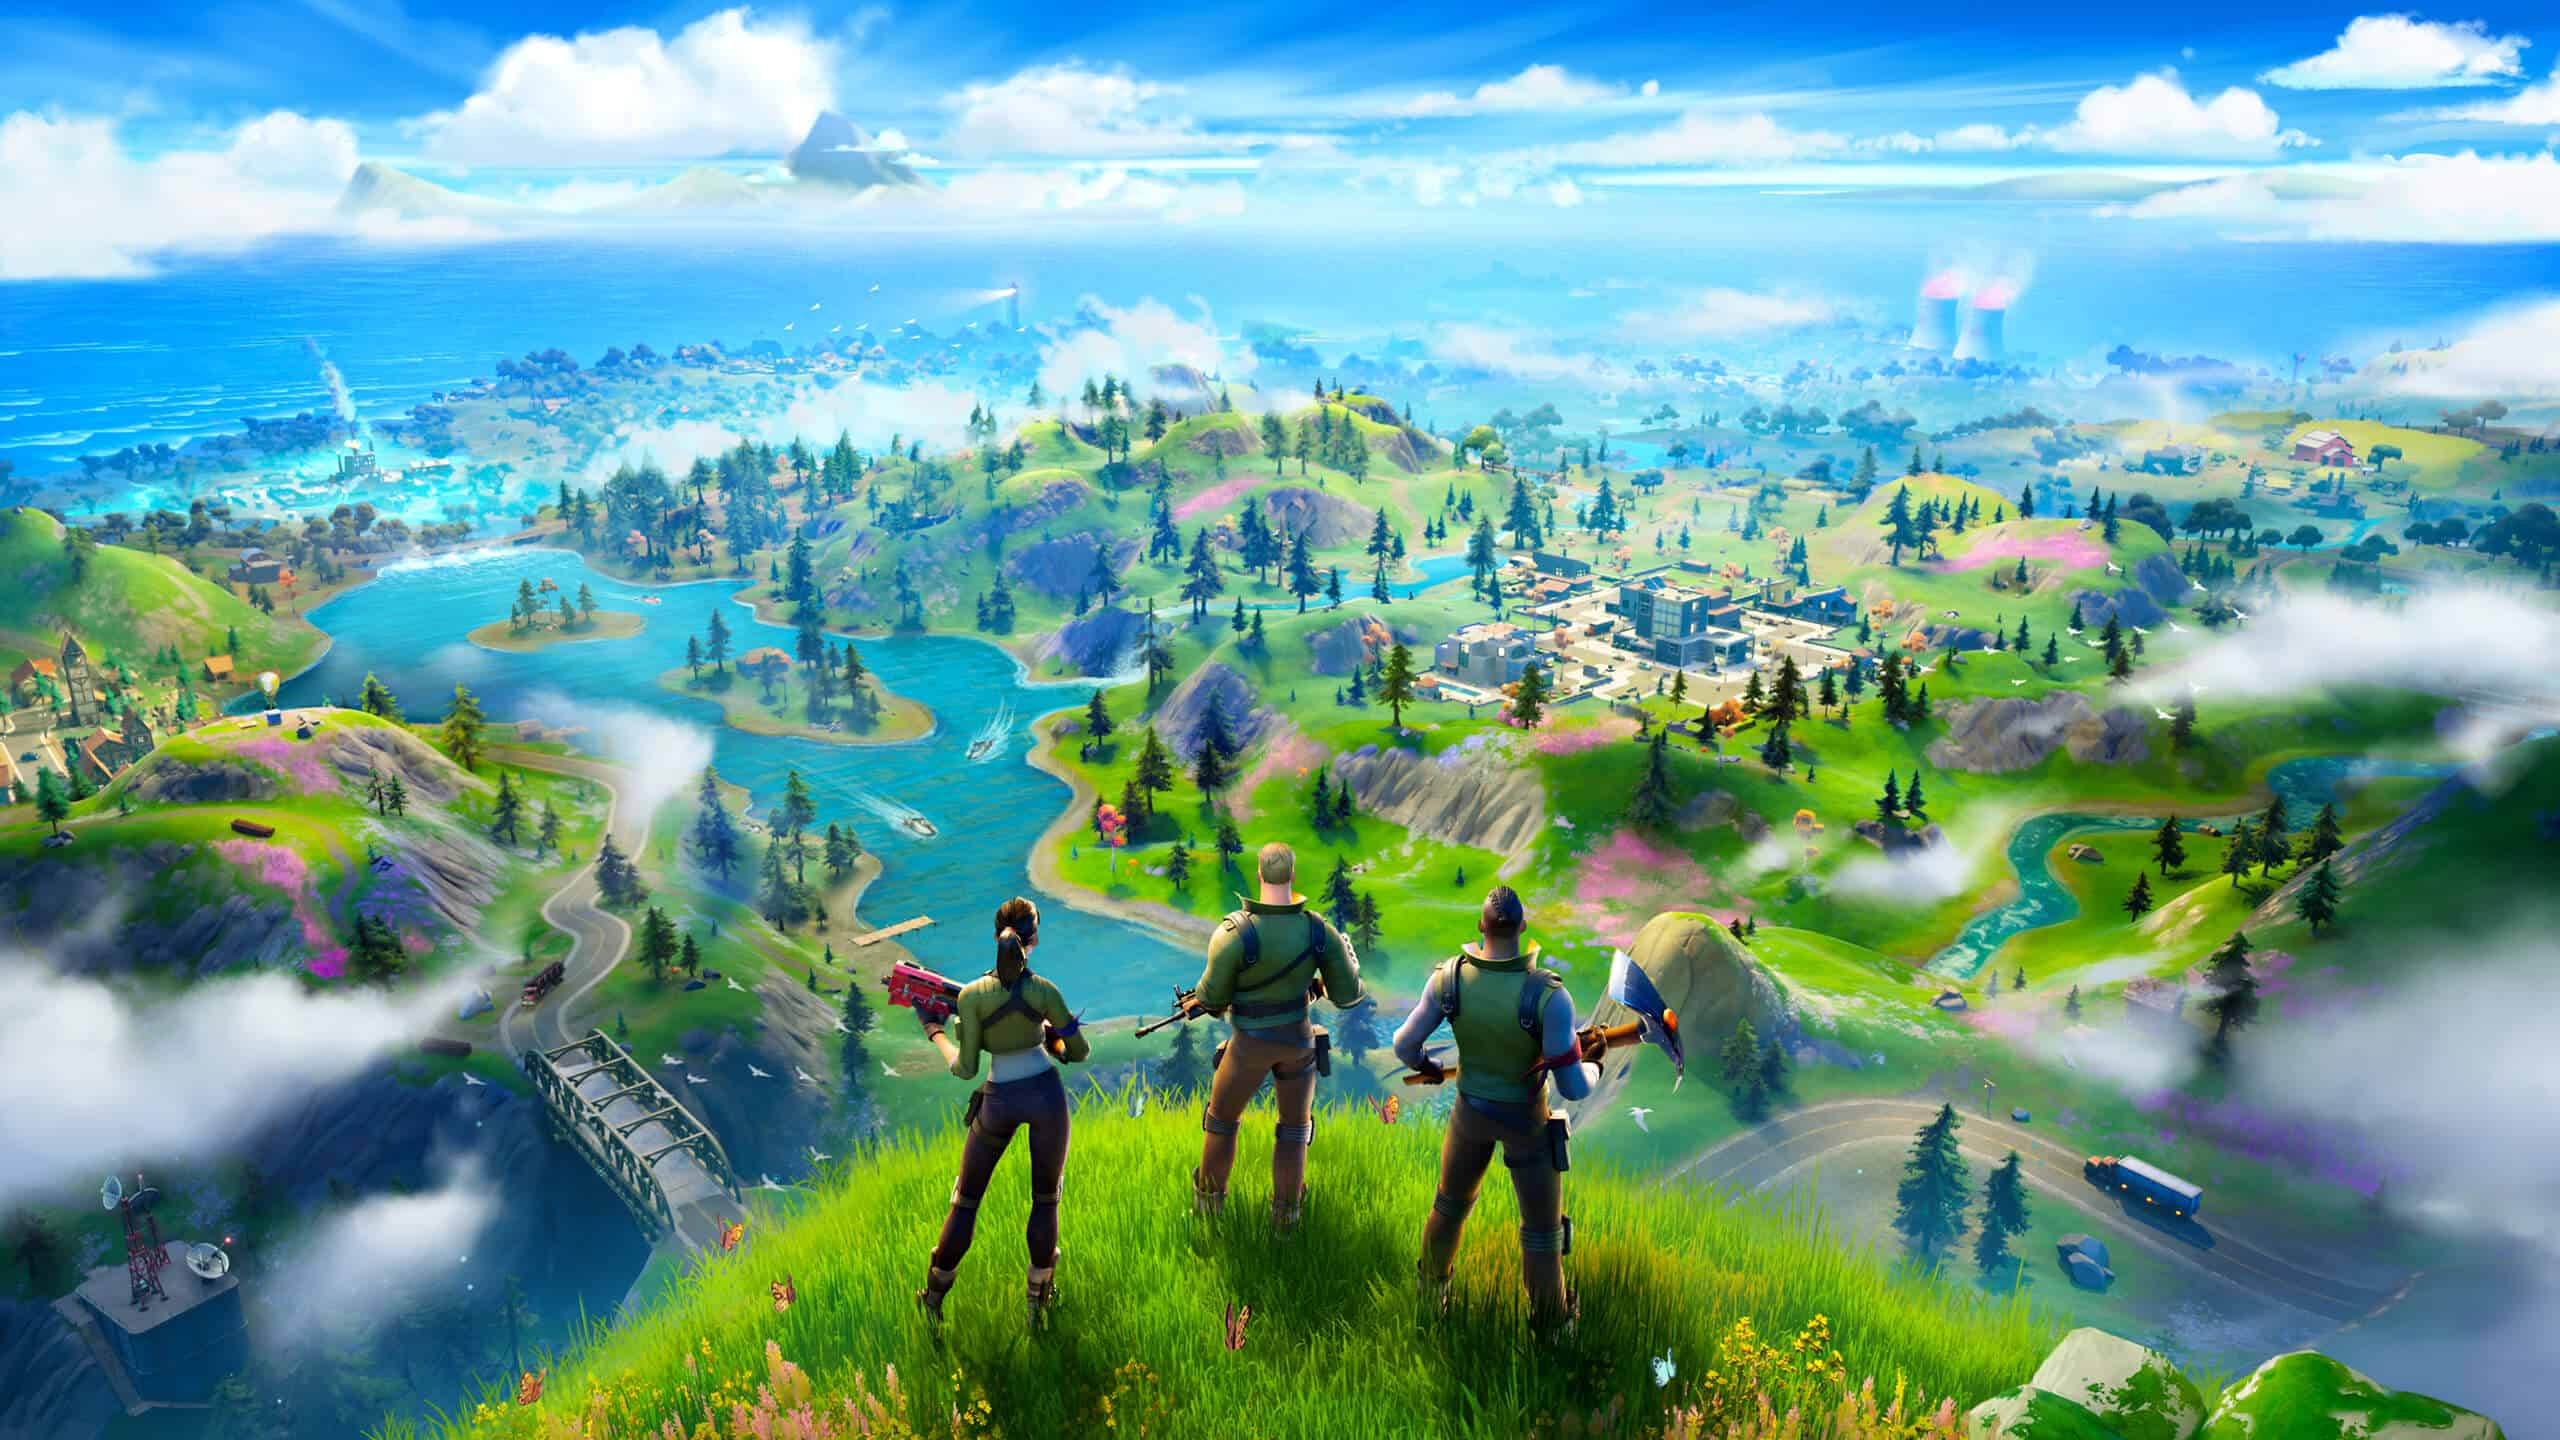 Trois personnages surplombant un paysage de jeu vidéo vibrant et luxuriant avec des rivières, des champs et des villes lointaines sous un ciel bleu clair.